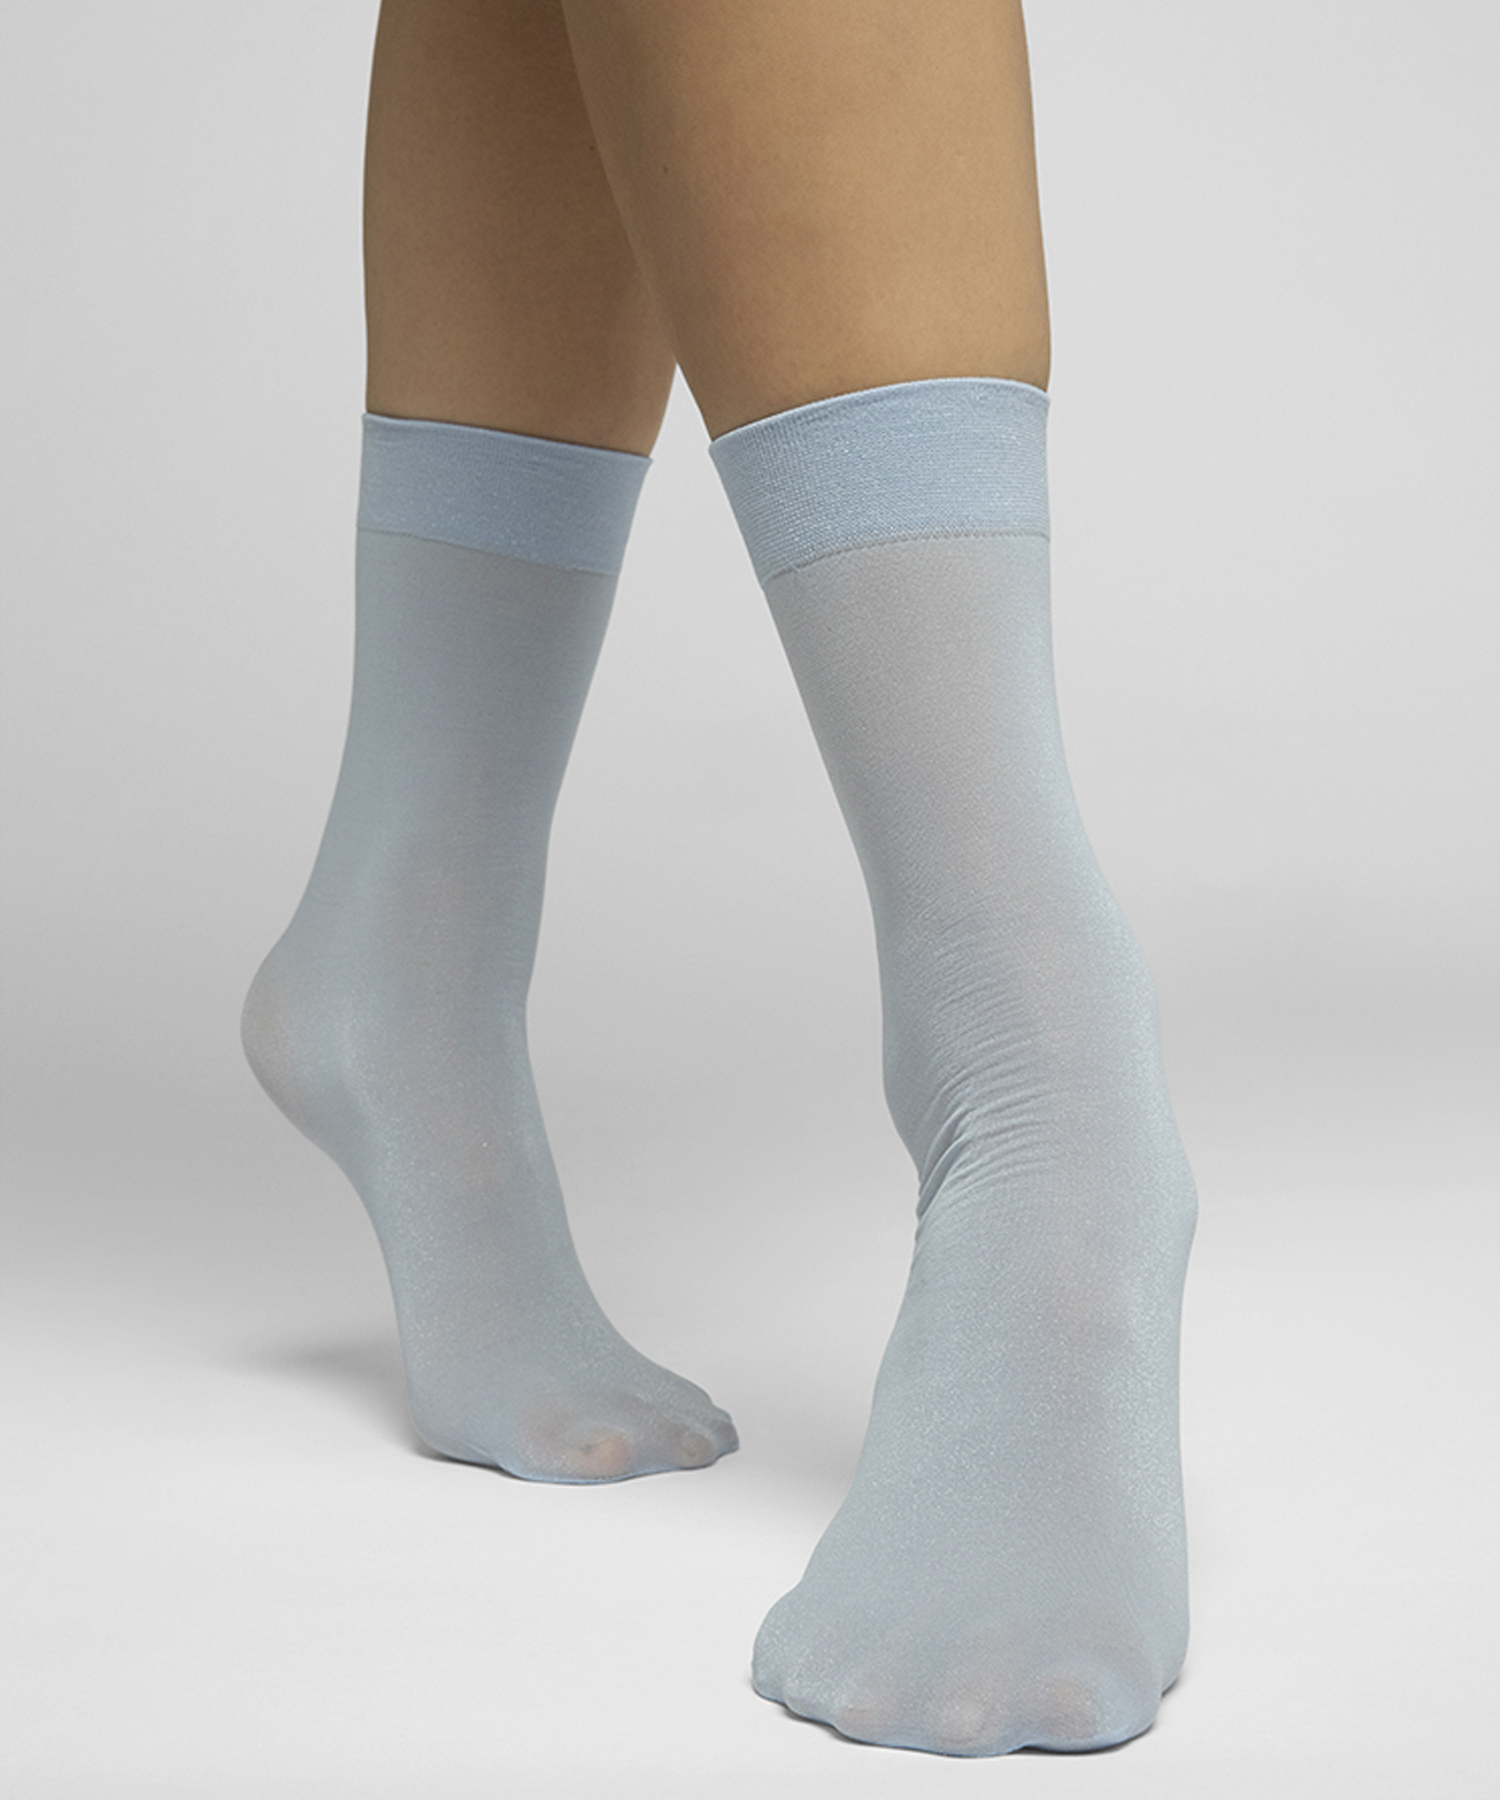 Malin Shimmery Socks Light blue